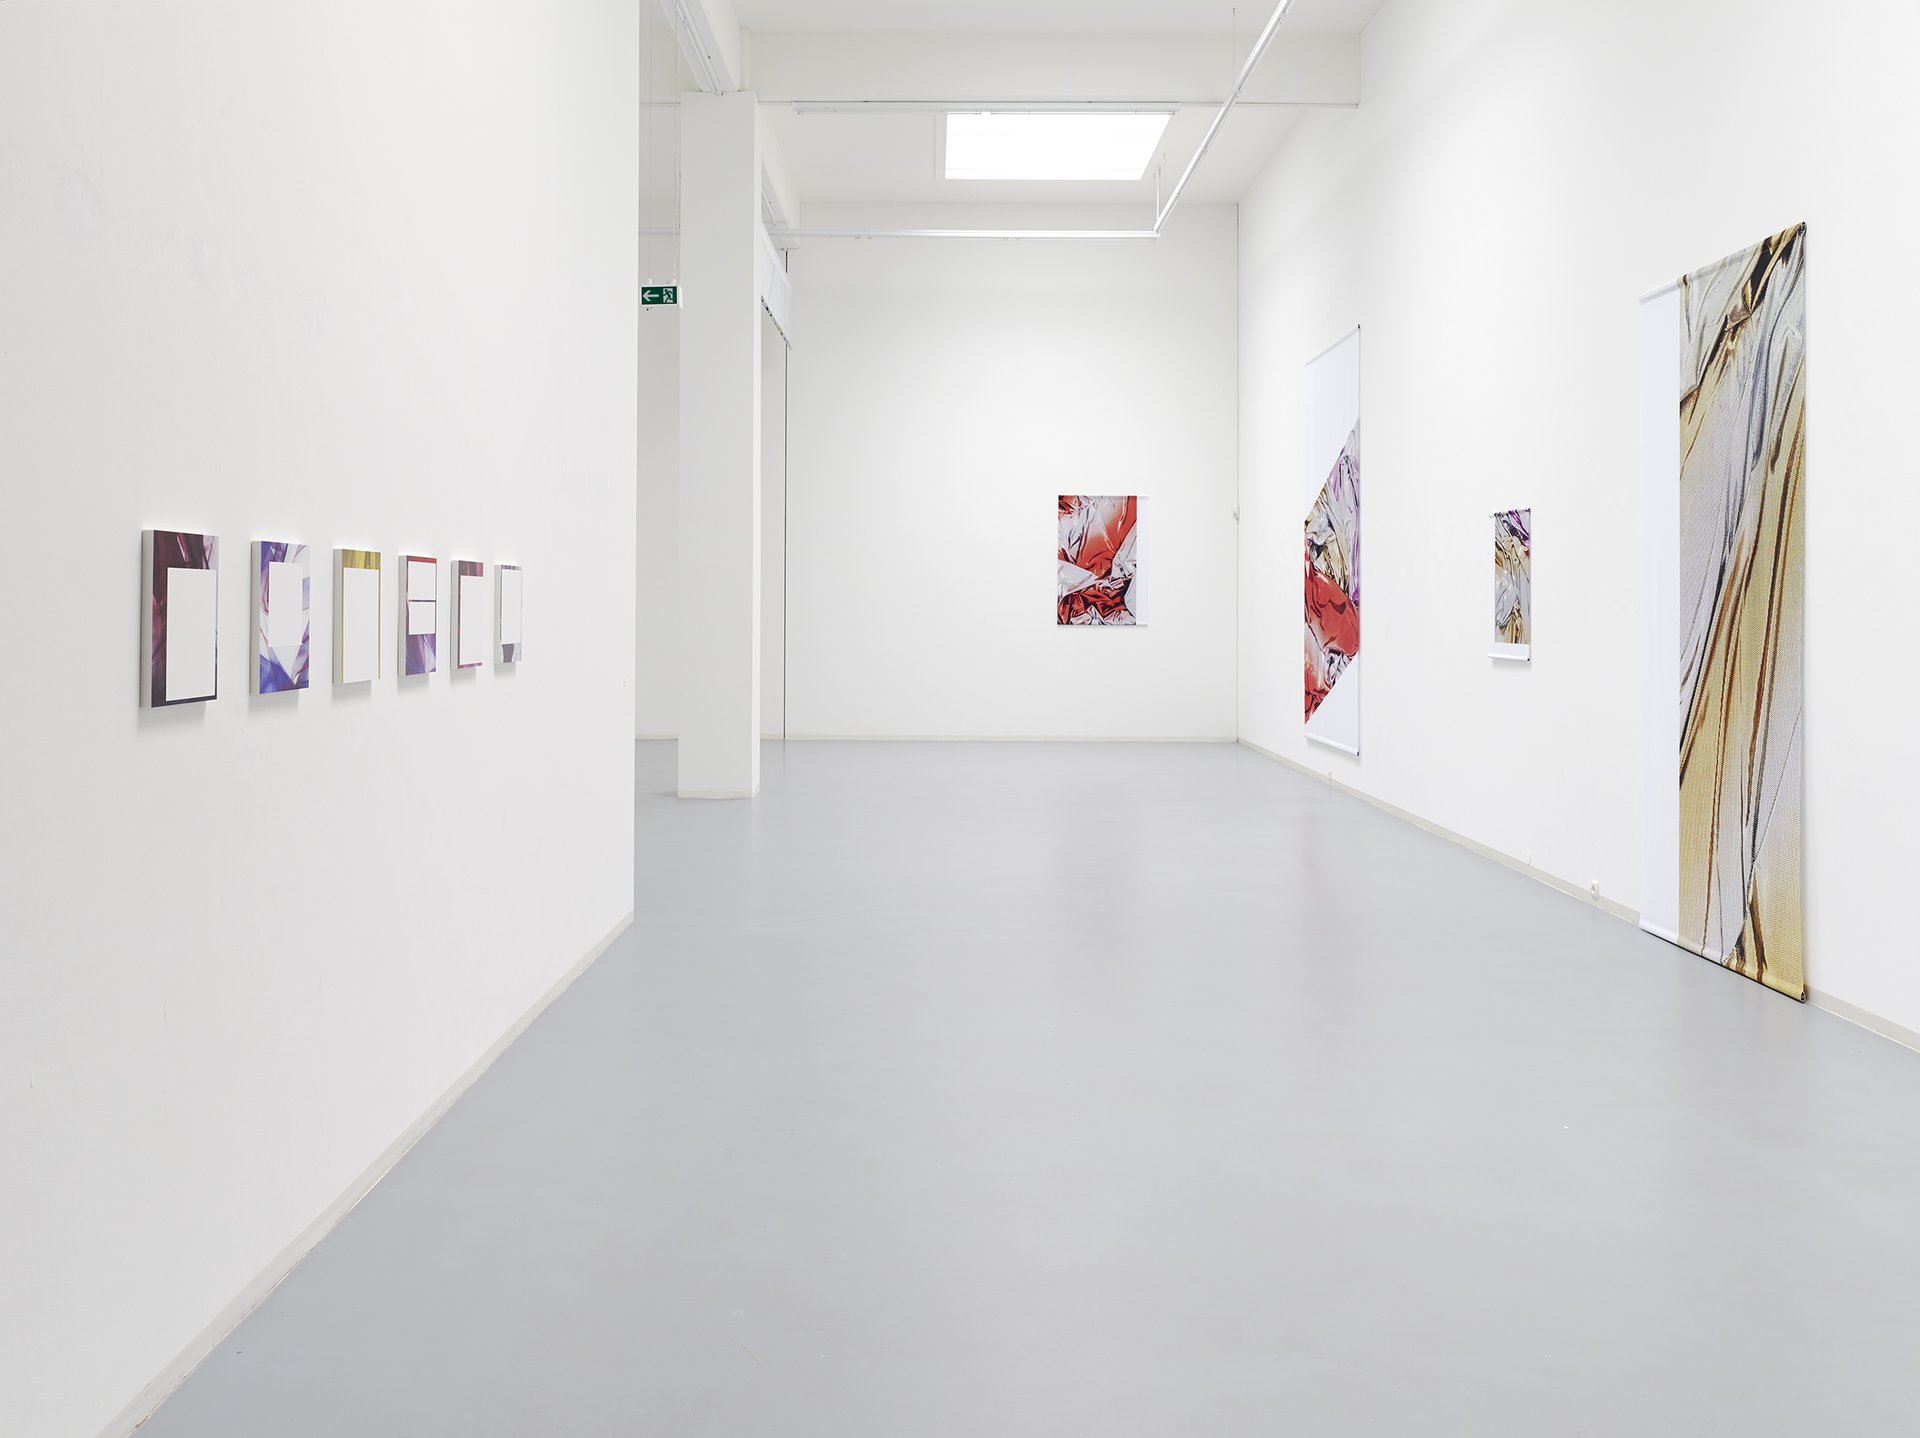 Anne Pöhlmann, Installationsansicht, 2014, Bonner Kunstverein, Courtesy die Künstlerin und Clages, Köln. Photo: Simon Vogel